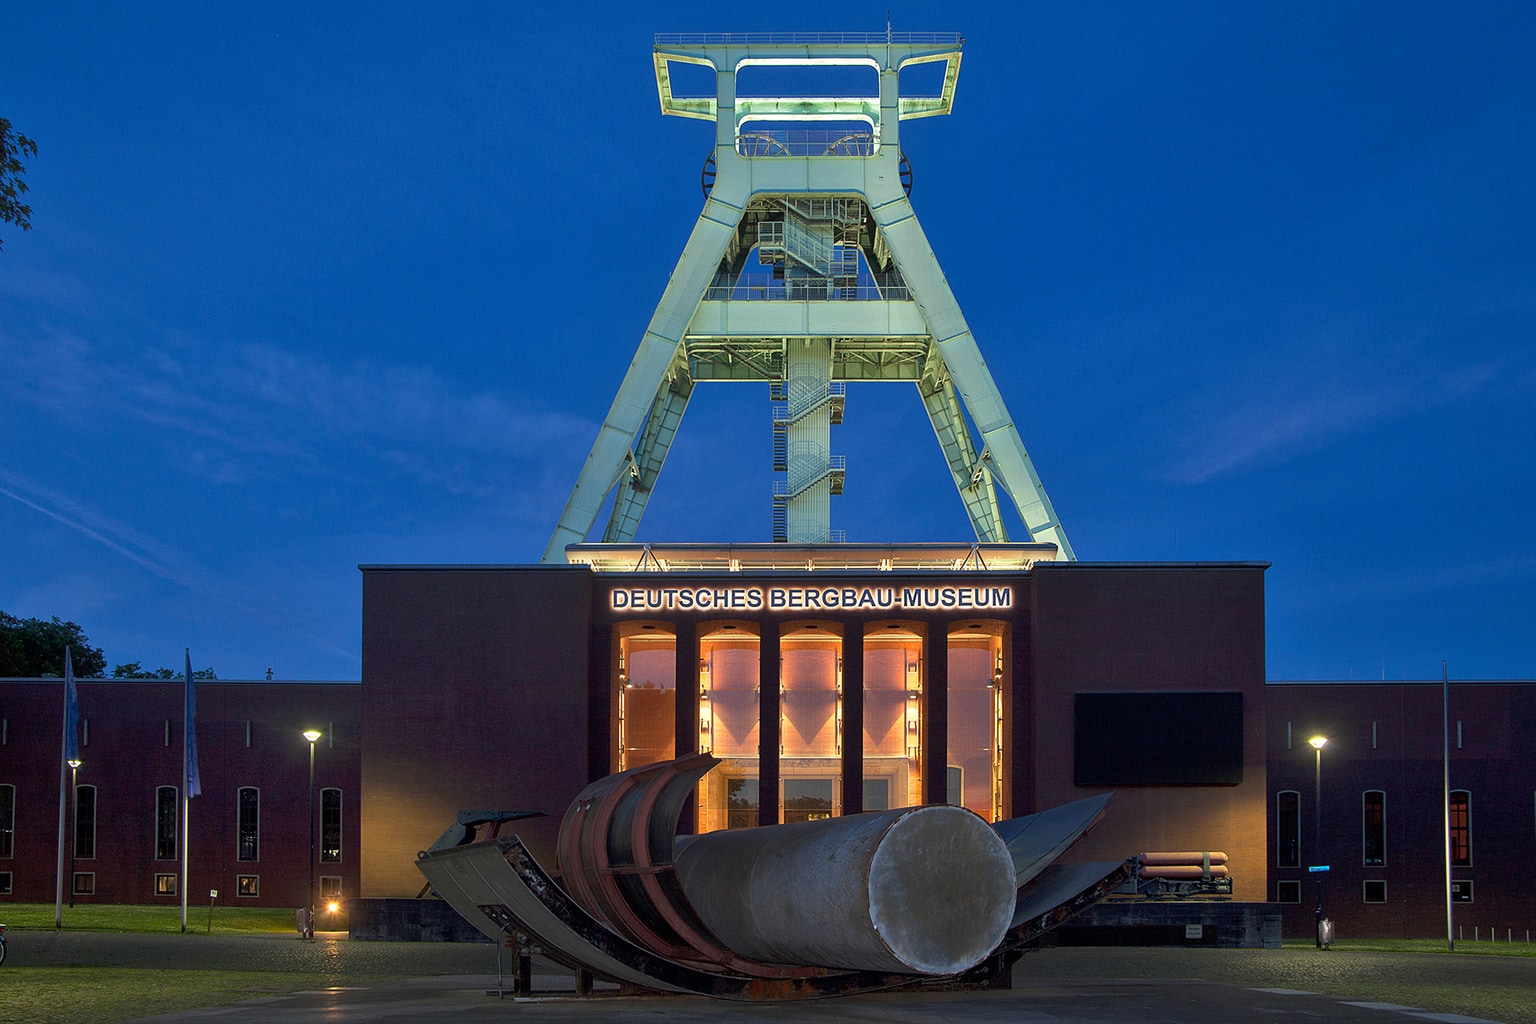 Het mijnbouwmuseum in de Duitse stad Bochum van buiten tijdens de schemering